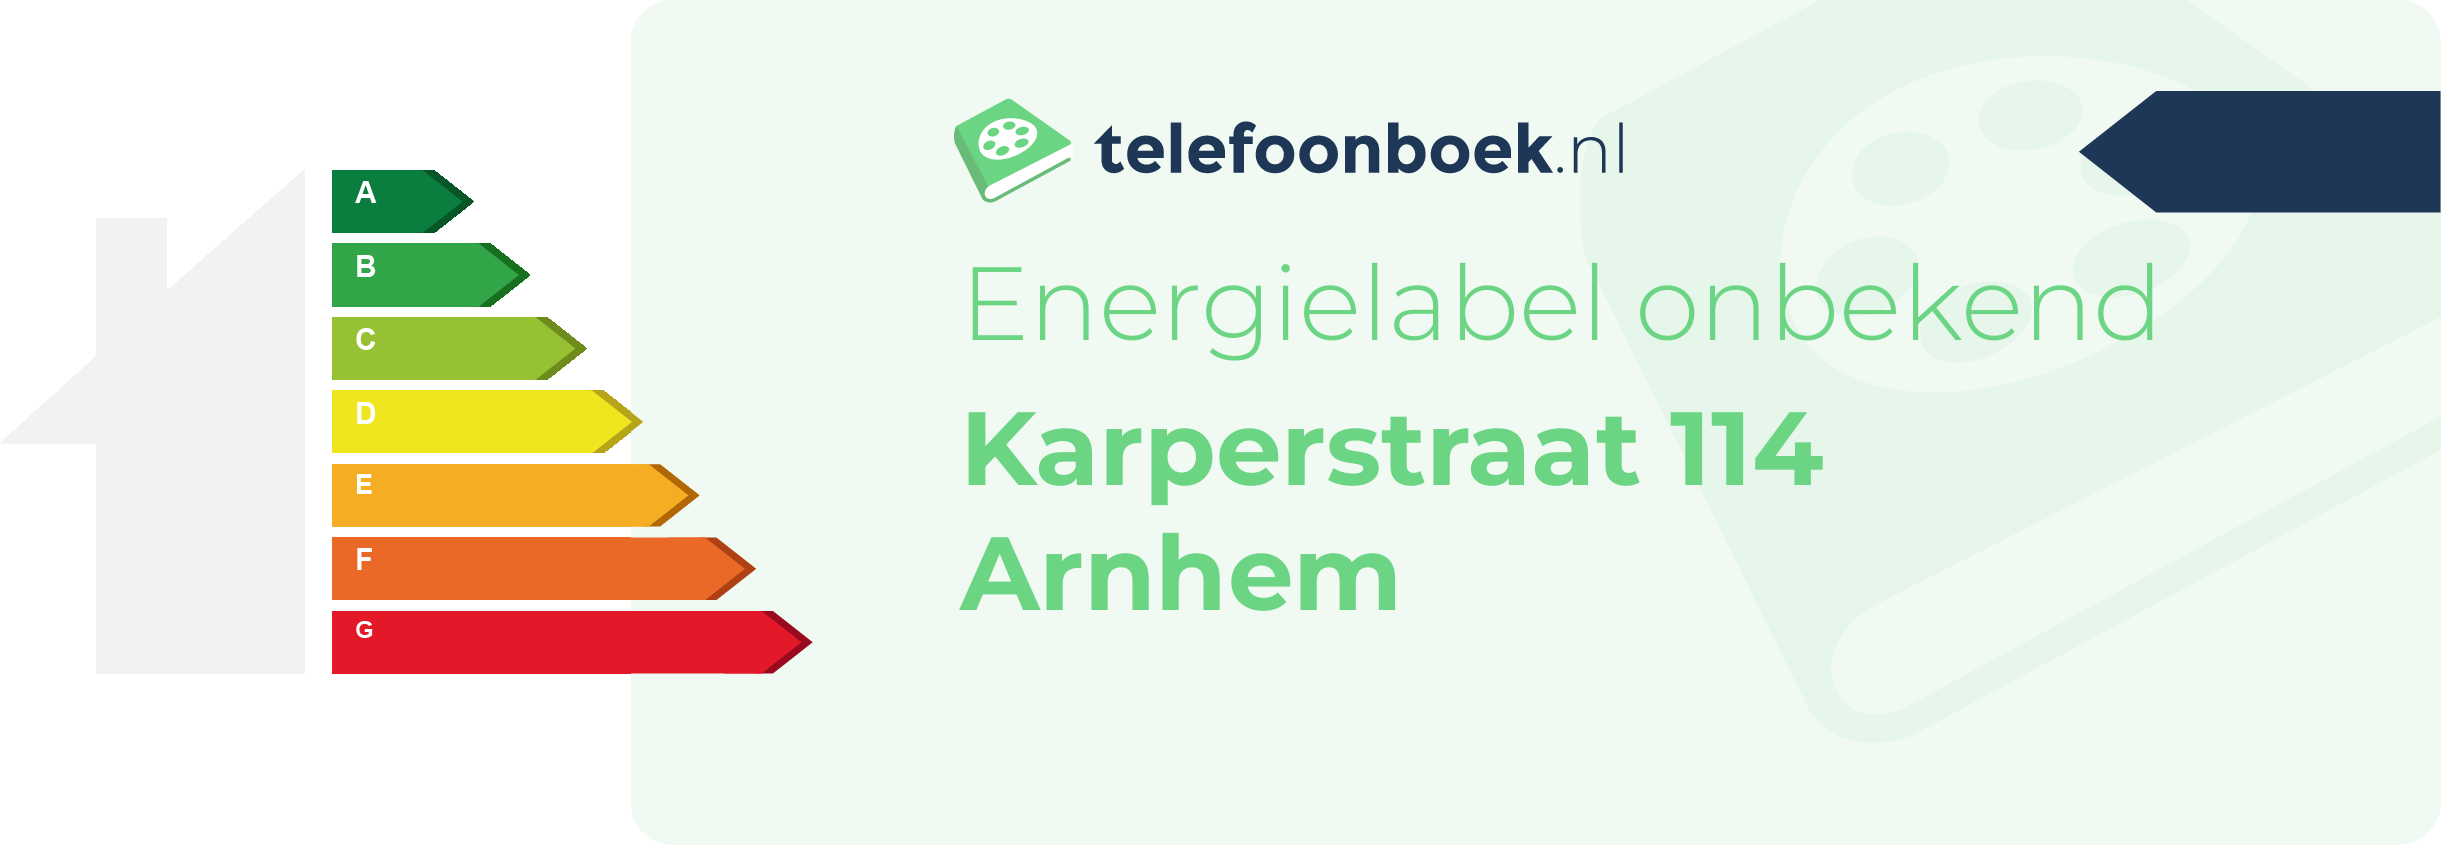 Energielabel Karperstraat 114 Arnhem